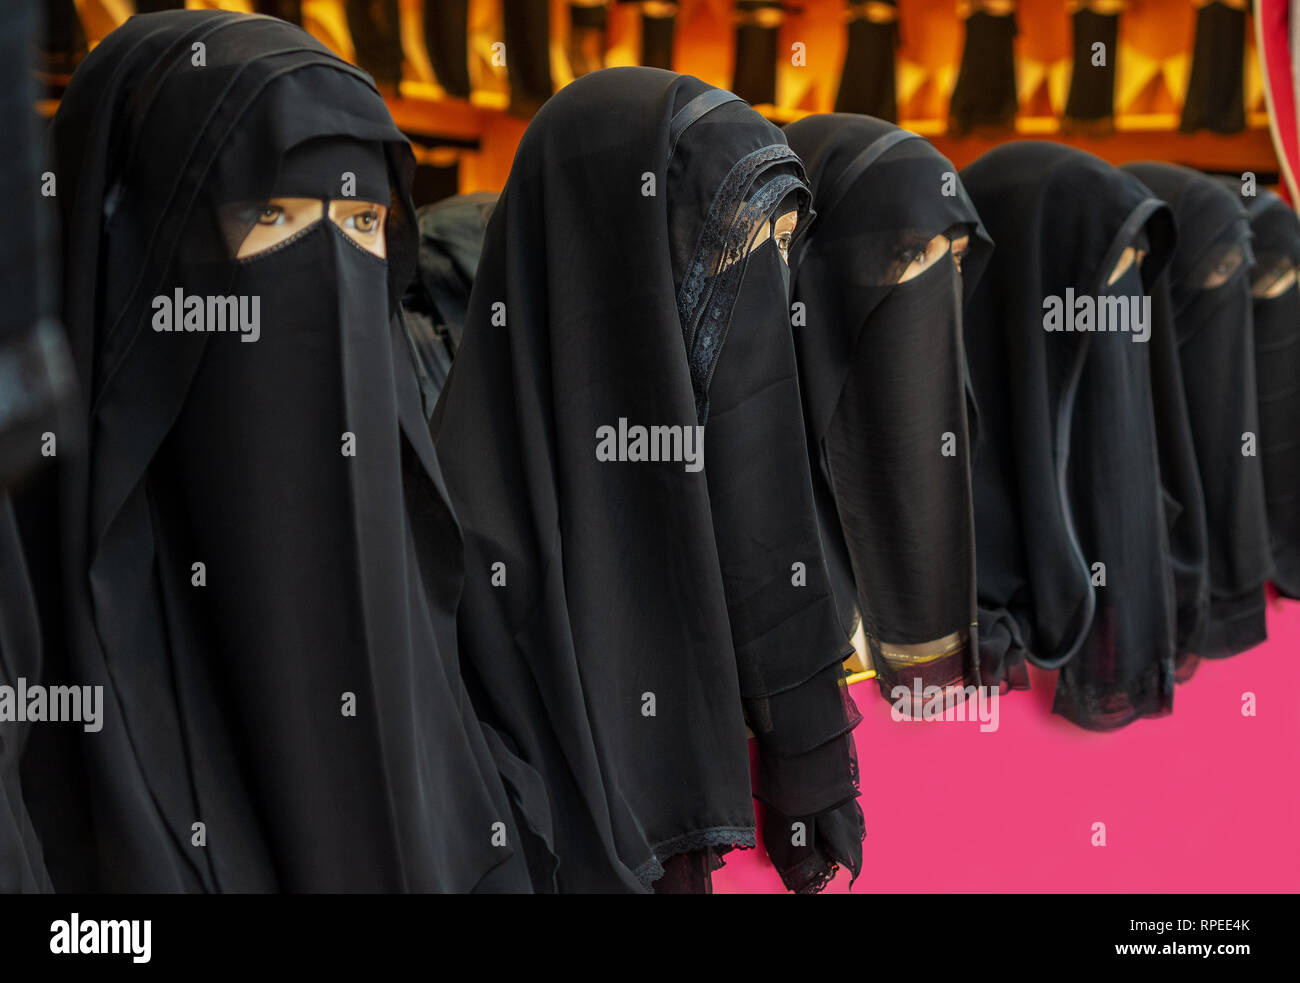 abaya fashion shop for islamic saudi woman in Dubai to cover face Stock Photo